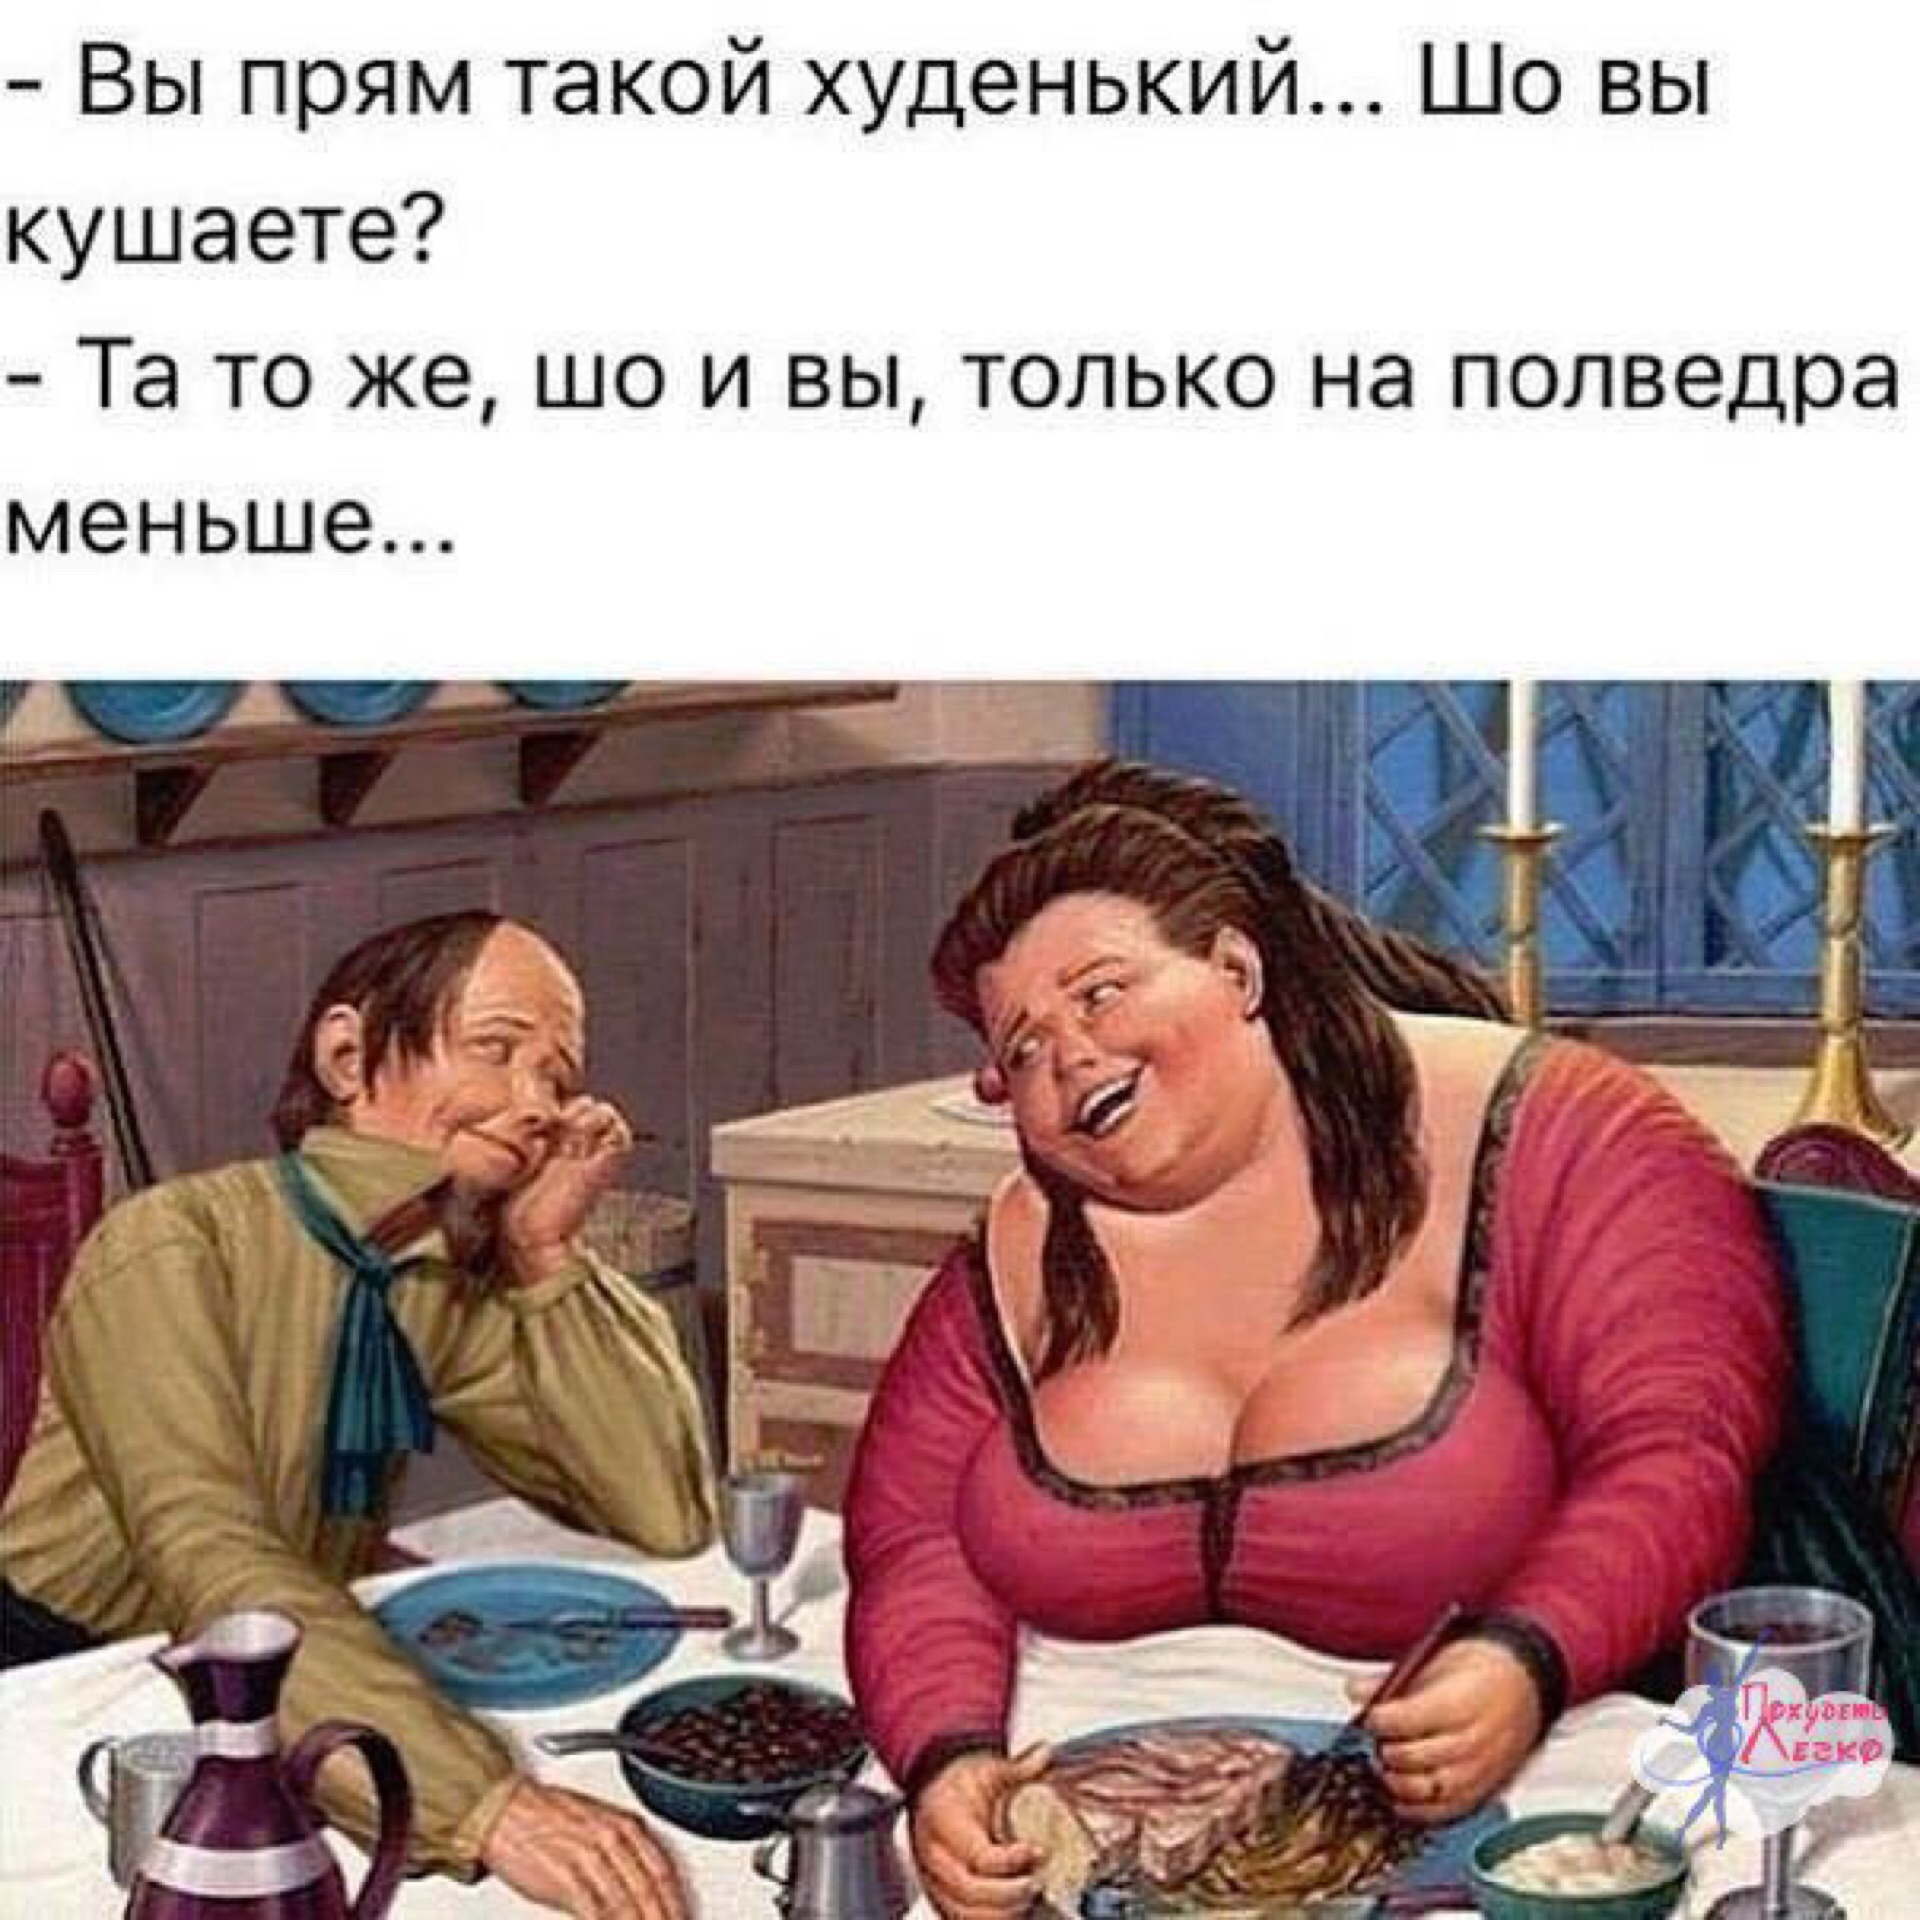 Юмор в картинках. Одесские анекдоты. Одесские анекдоты в картинках. Шутки про худеющих. Приколы про похудение.